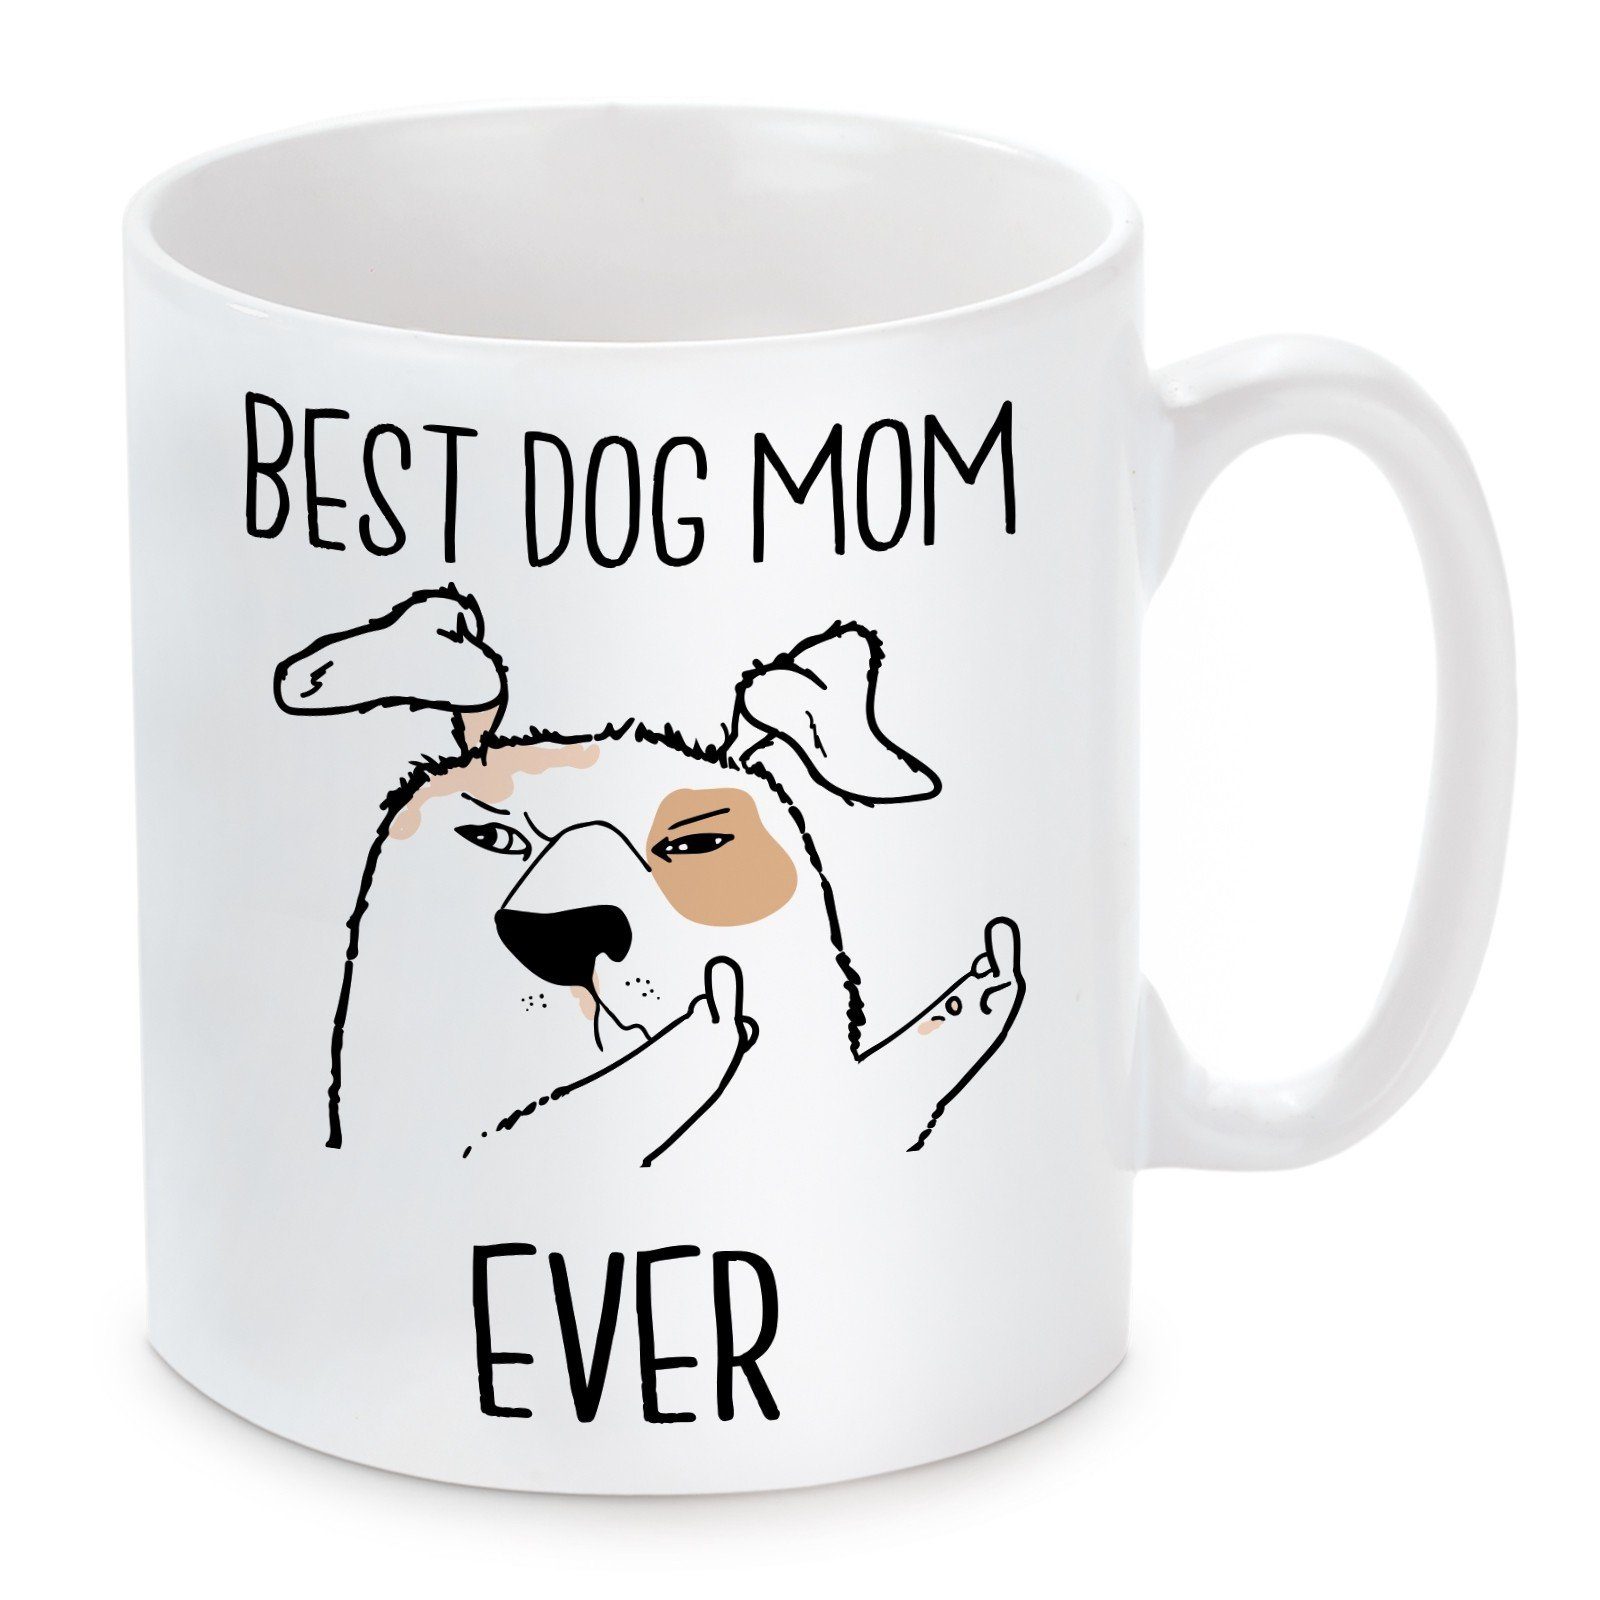 Motiv Keramik, Dog mikrowellengeeignet Mom Herzbotschaft Best Tasse spülmaschinenfest Kaffeebecher mit und Kaffeetasse Ever,